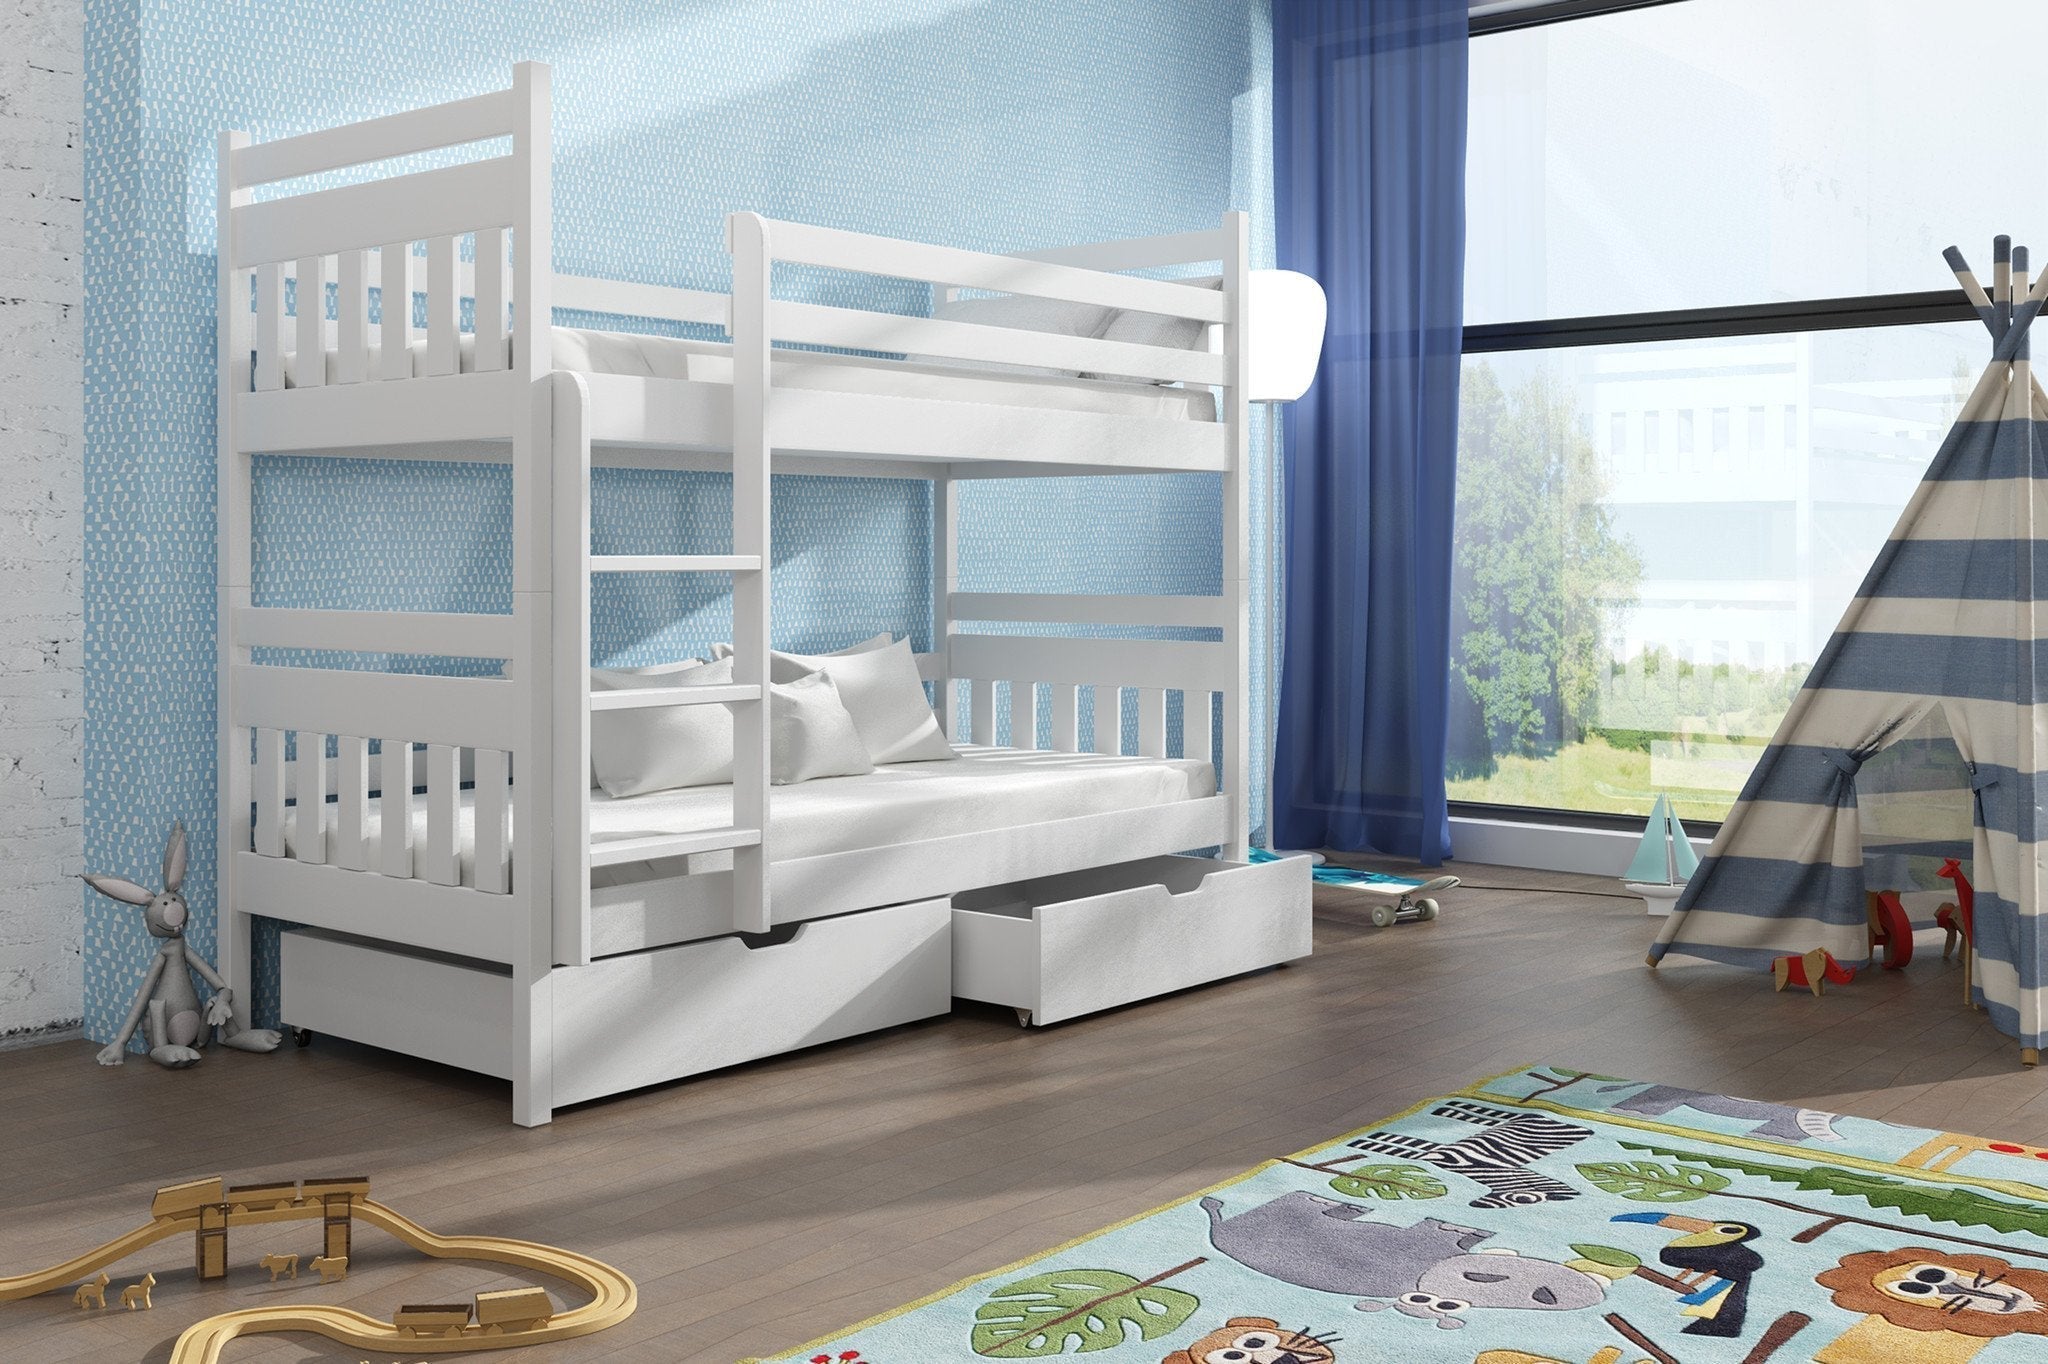 View Wooden Bunk Bed Adas with Storage White Matt Without Mattresses information